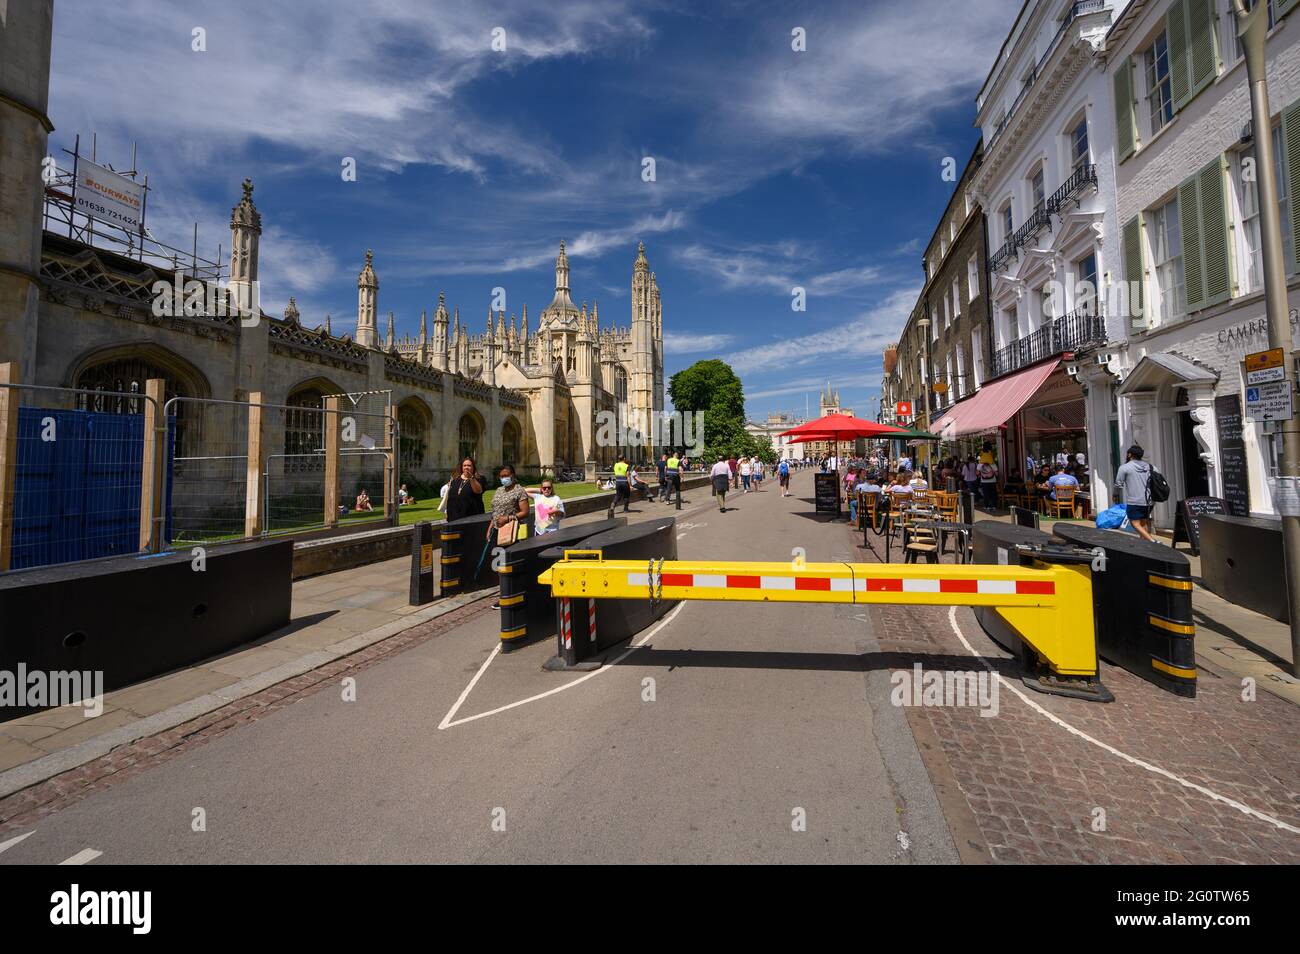 View along King's Parade, Cambridge, England Stock Photo